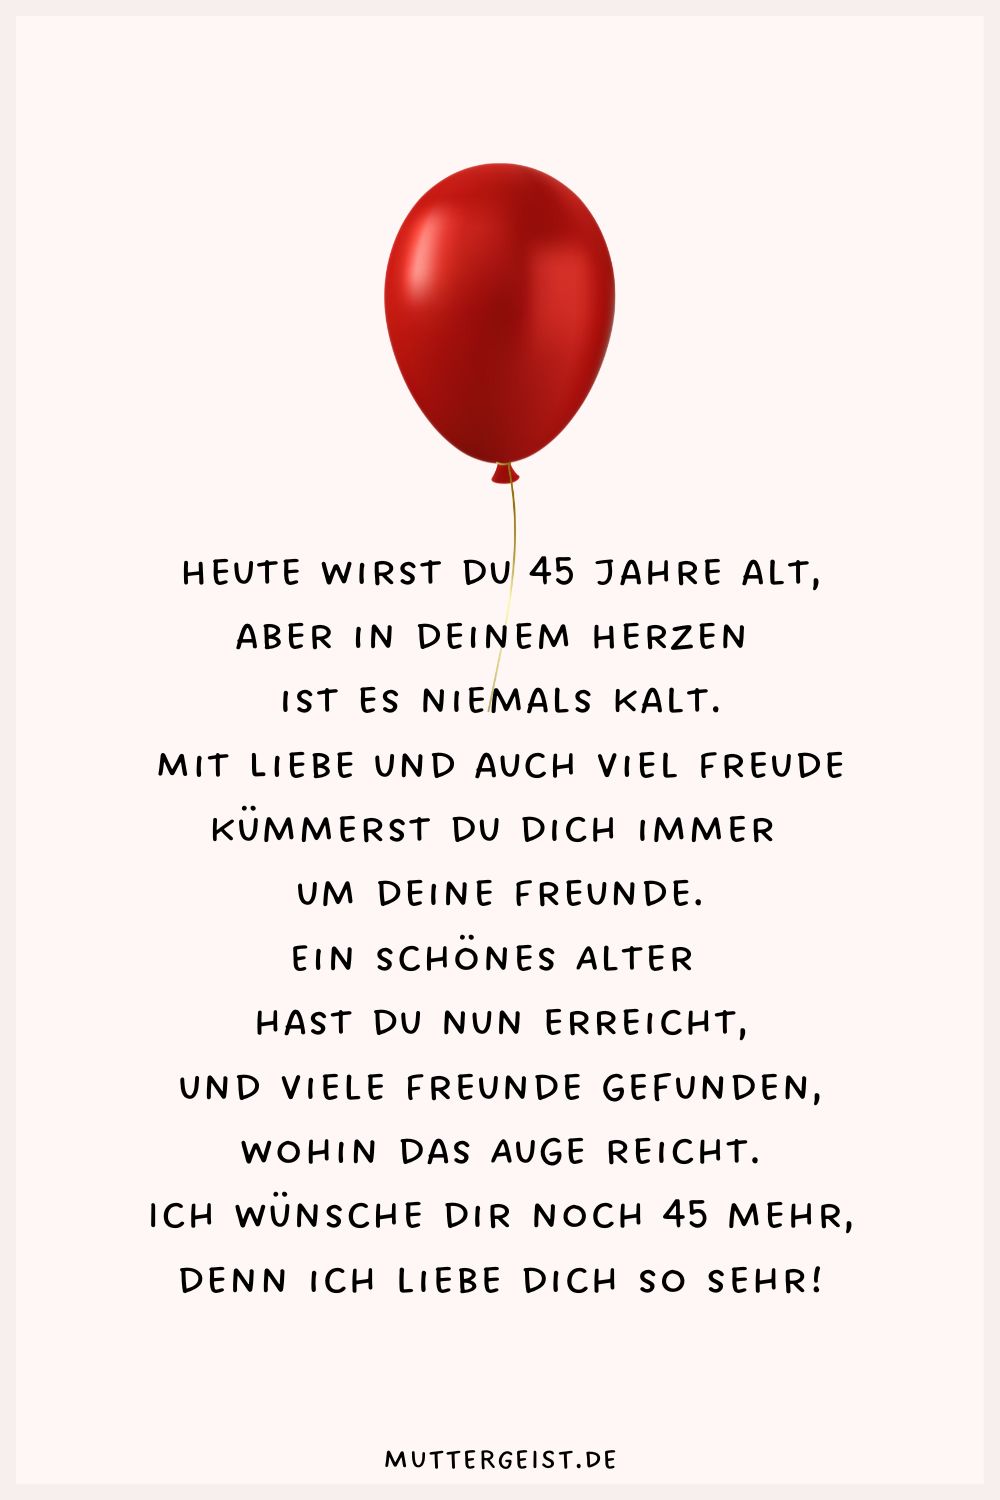 Cooler Geburtstagswunsch zum 45. Geburtstag mit Luftballon illustriert